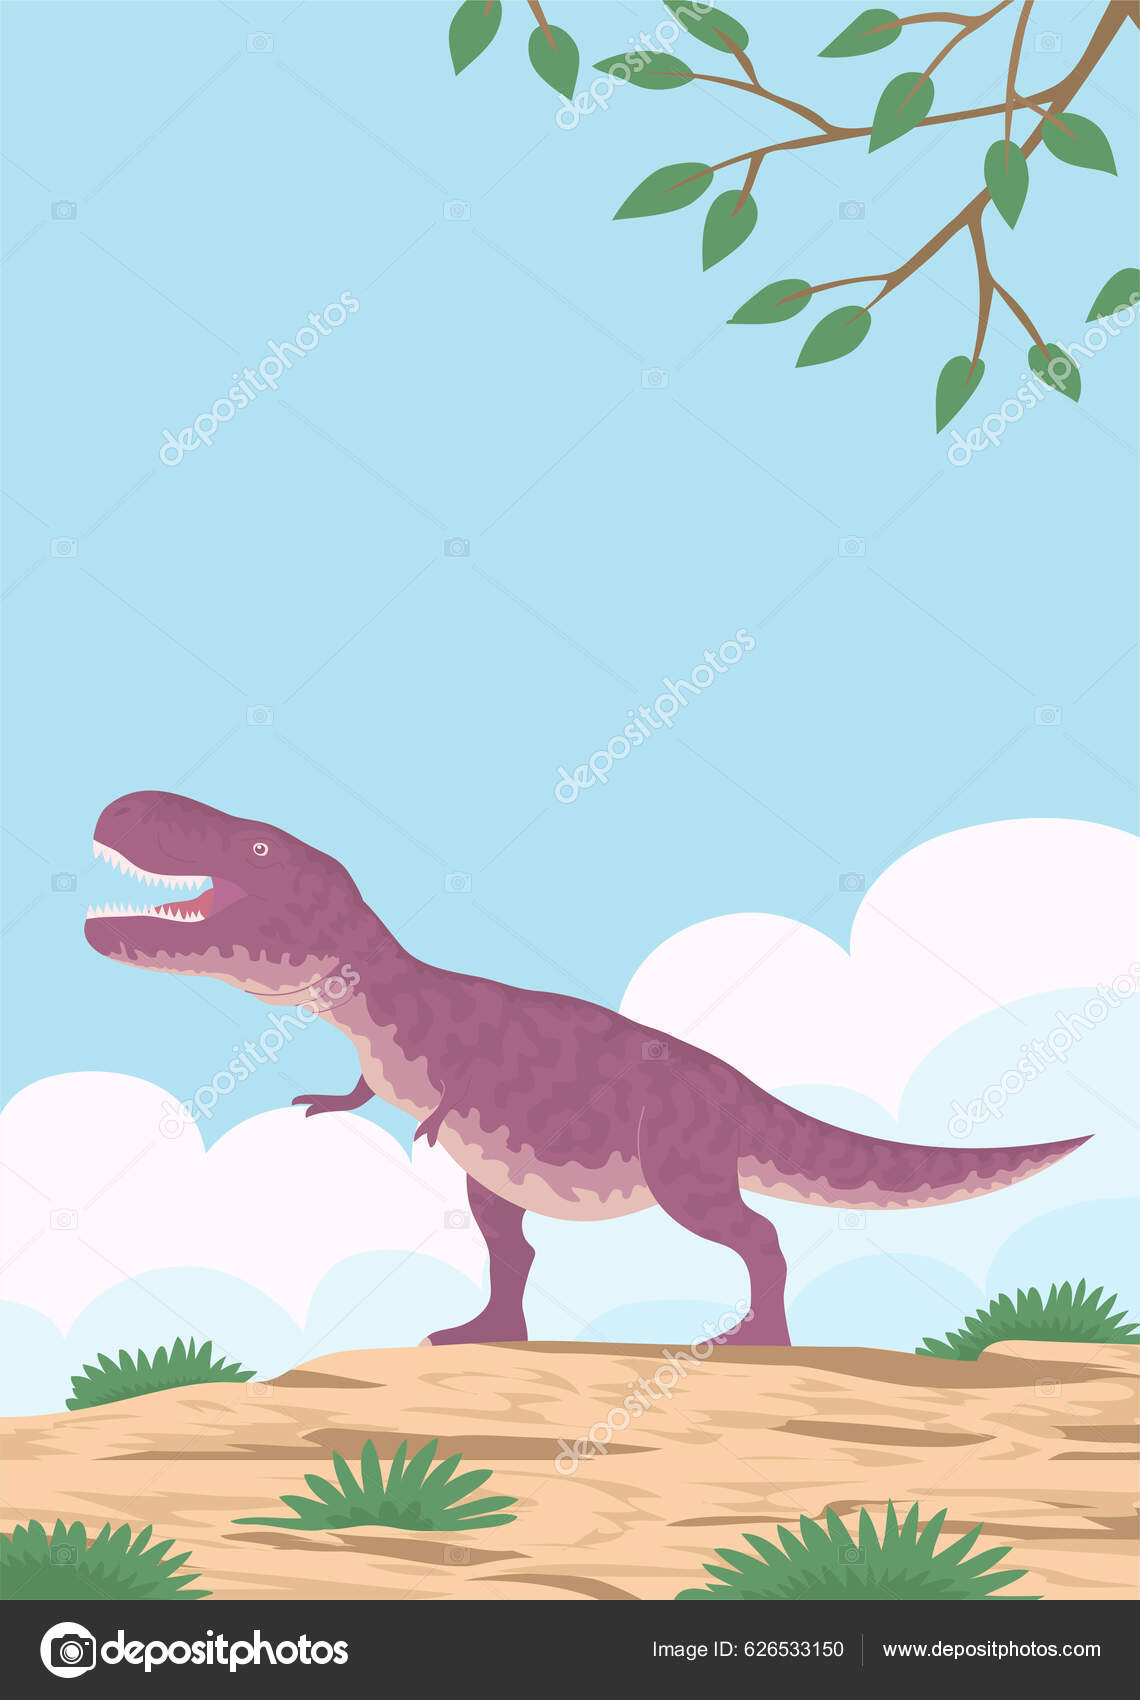 Adesivo Engraçado humor de desenho animado de T rex dinoss